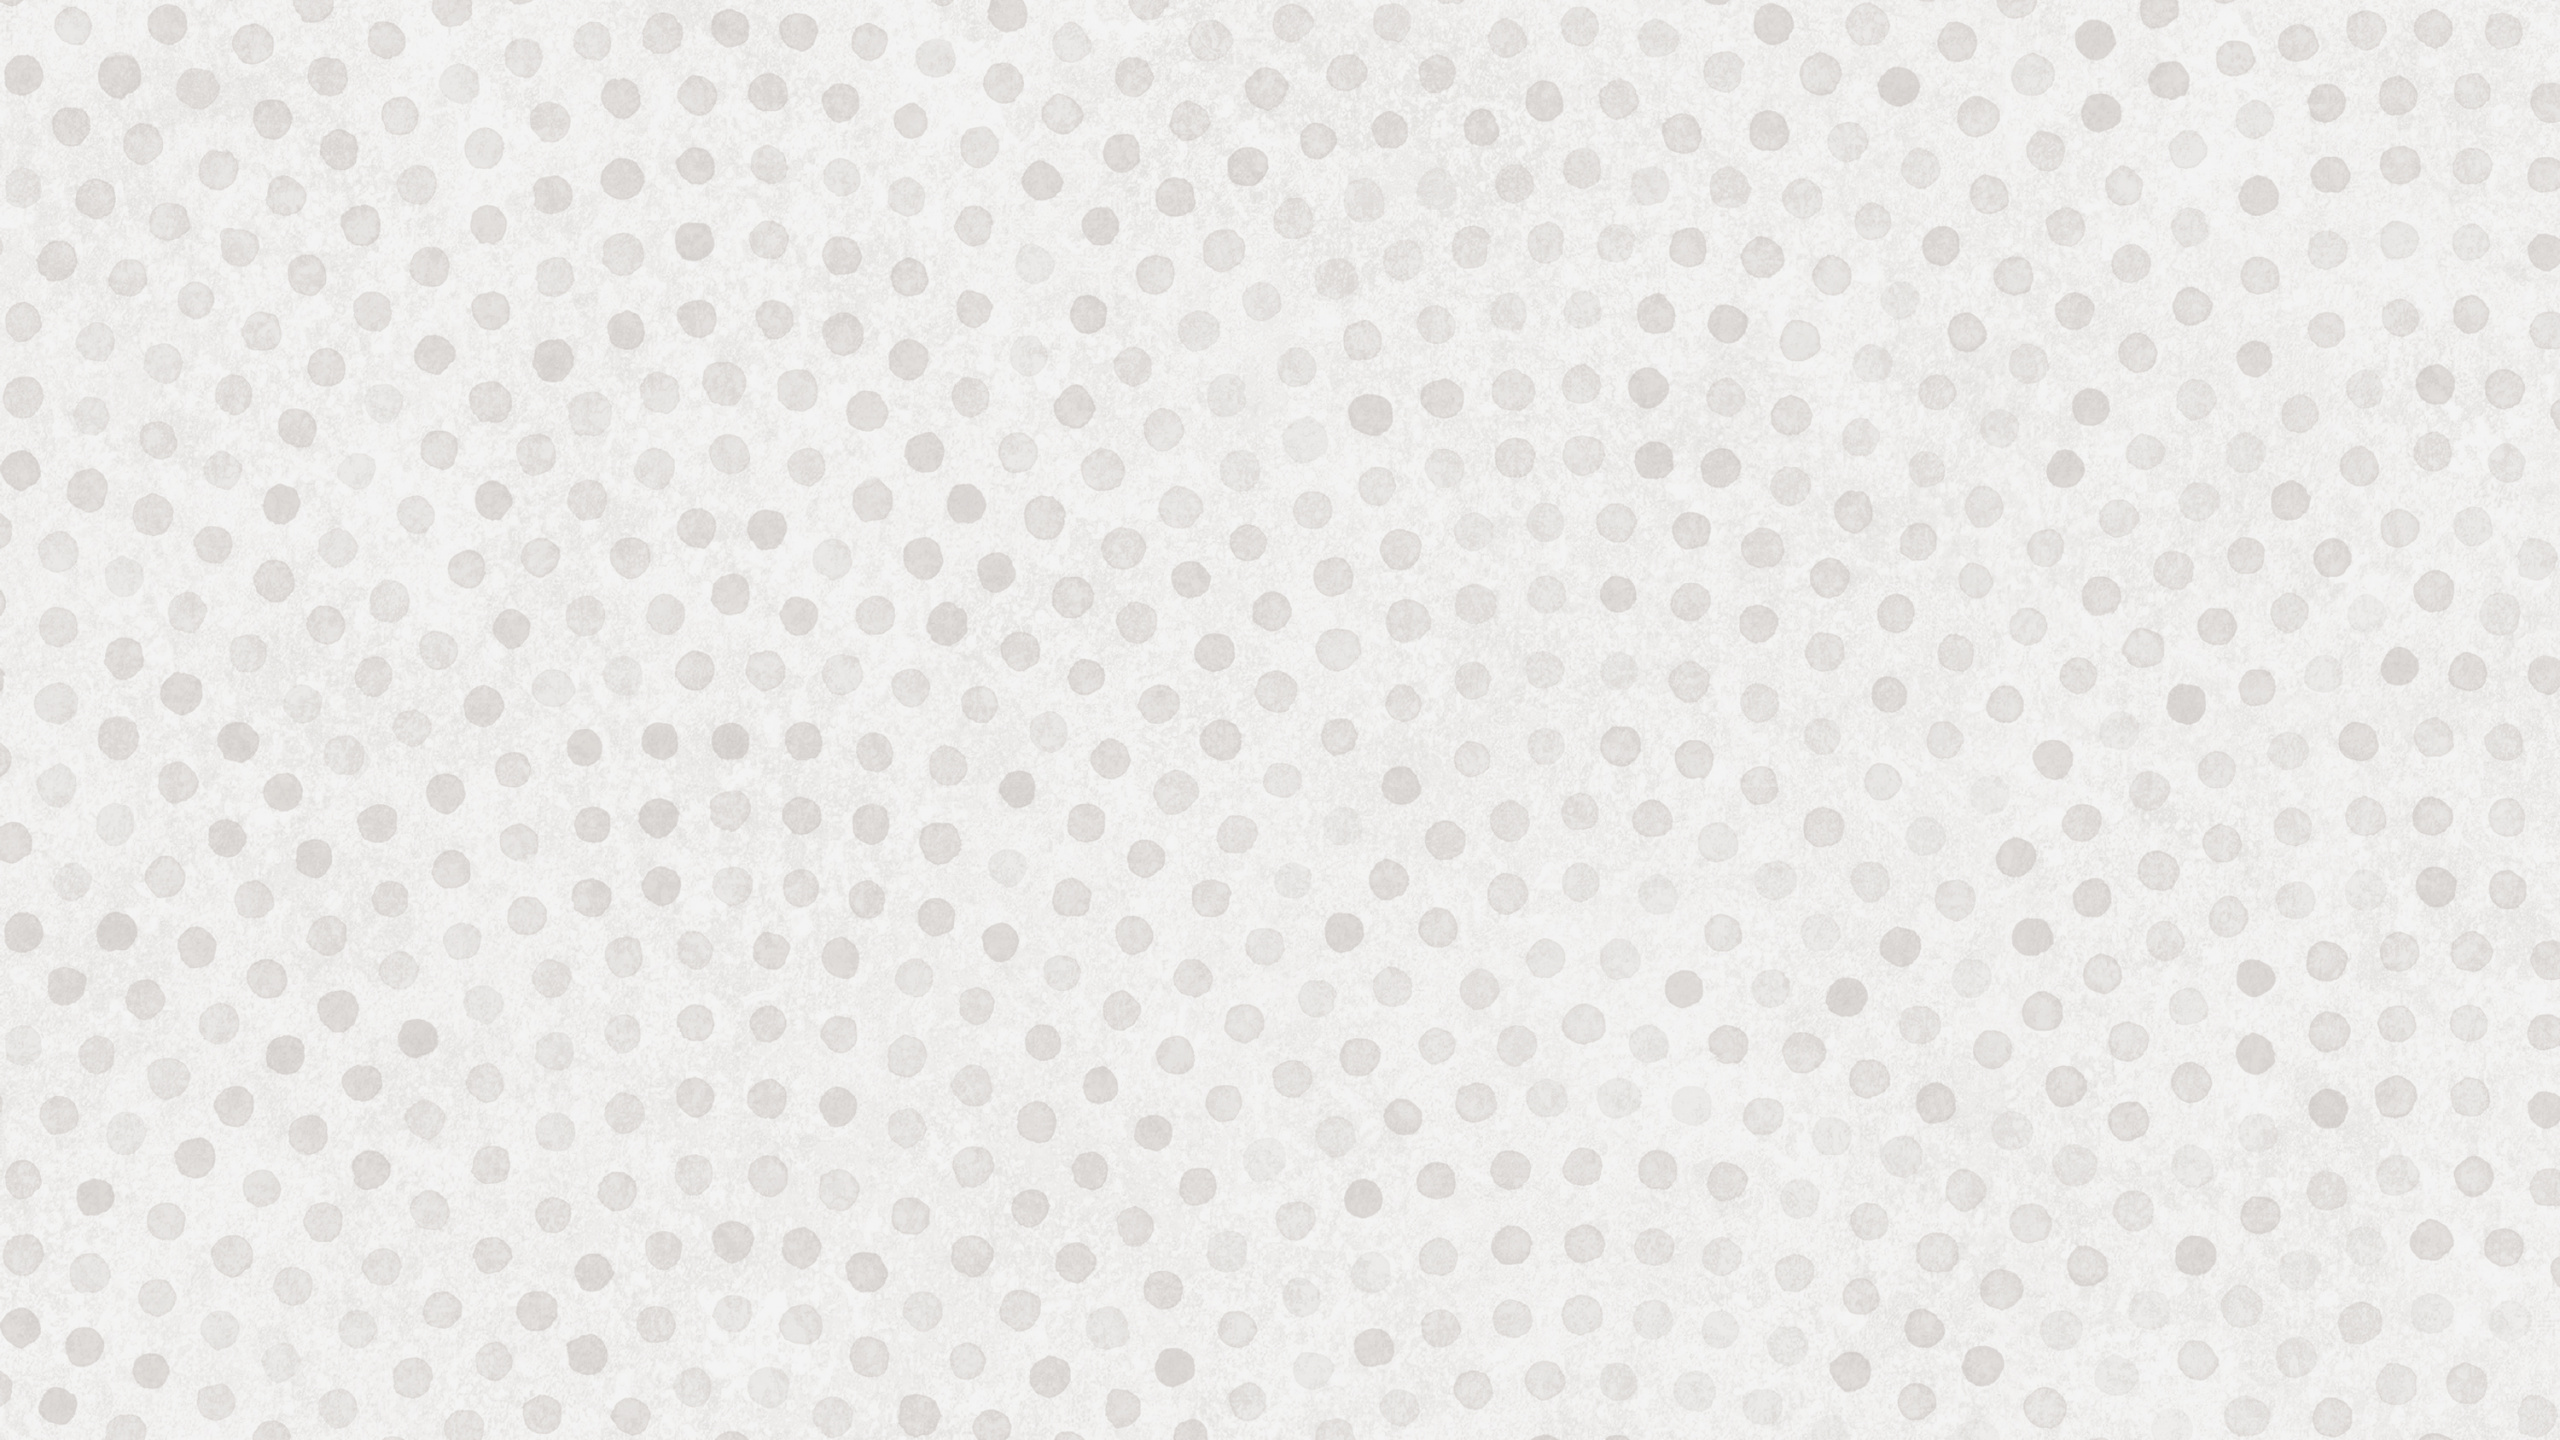 Textile à Pois Blancs et Noirs. Wallpaper in 2560x1440 Resolution